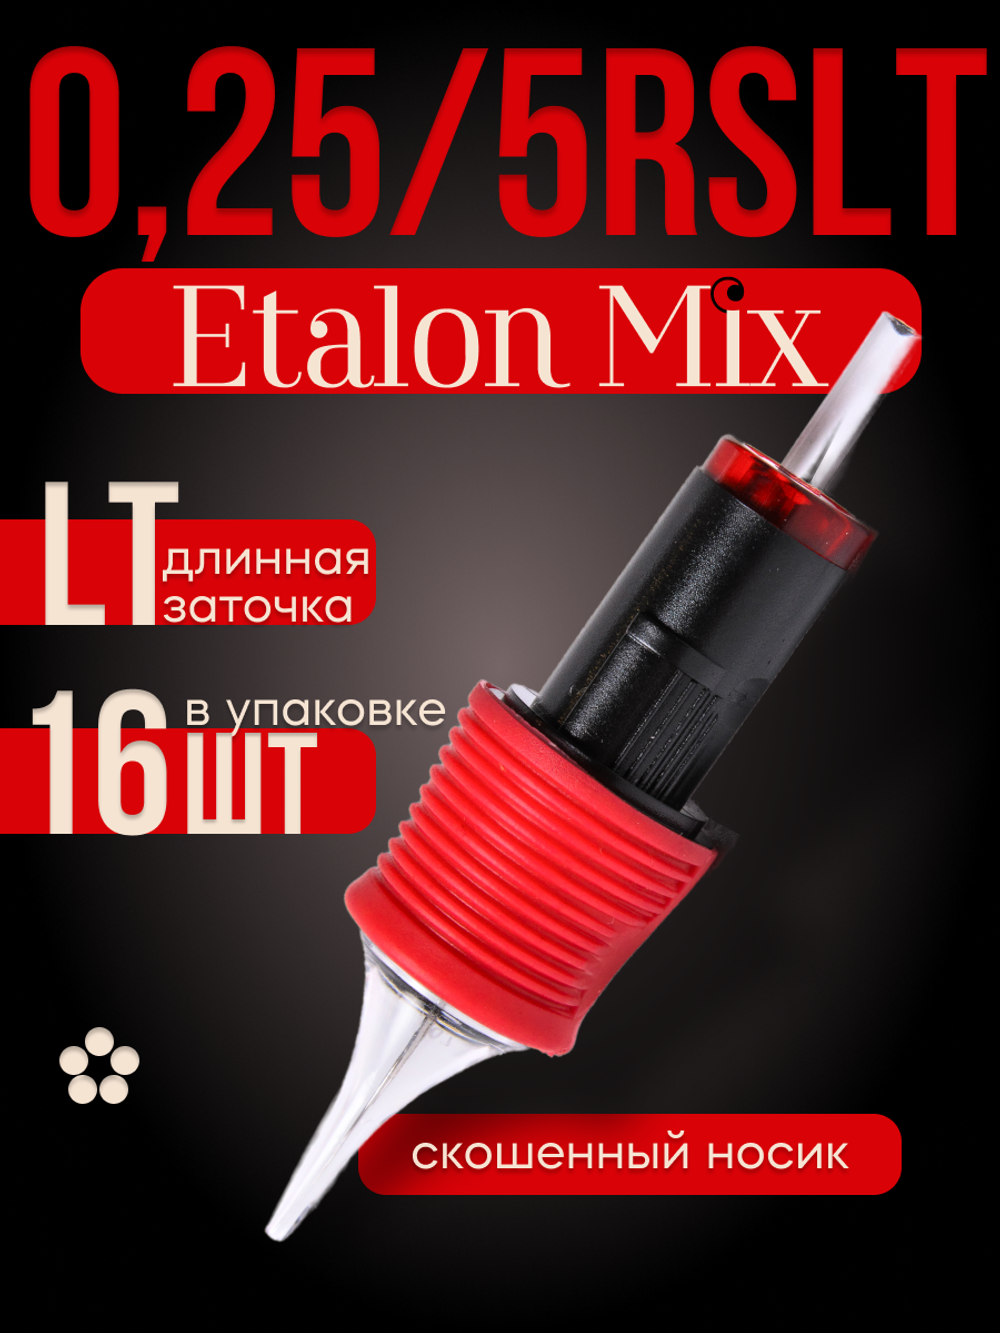 Картриджи для татуажа Etalon Mix 0.25/5RSLT 16 шт